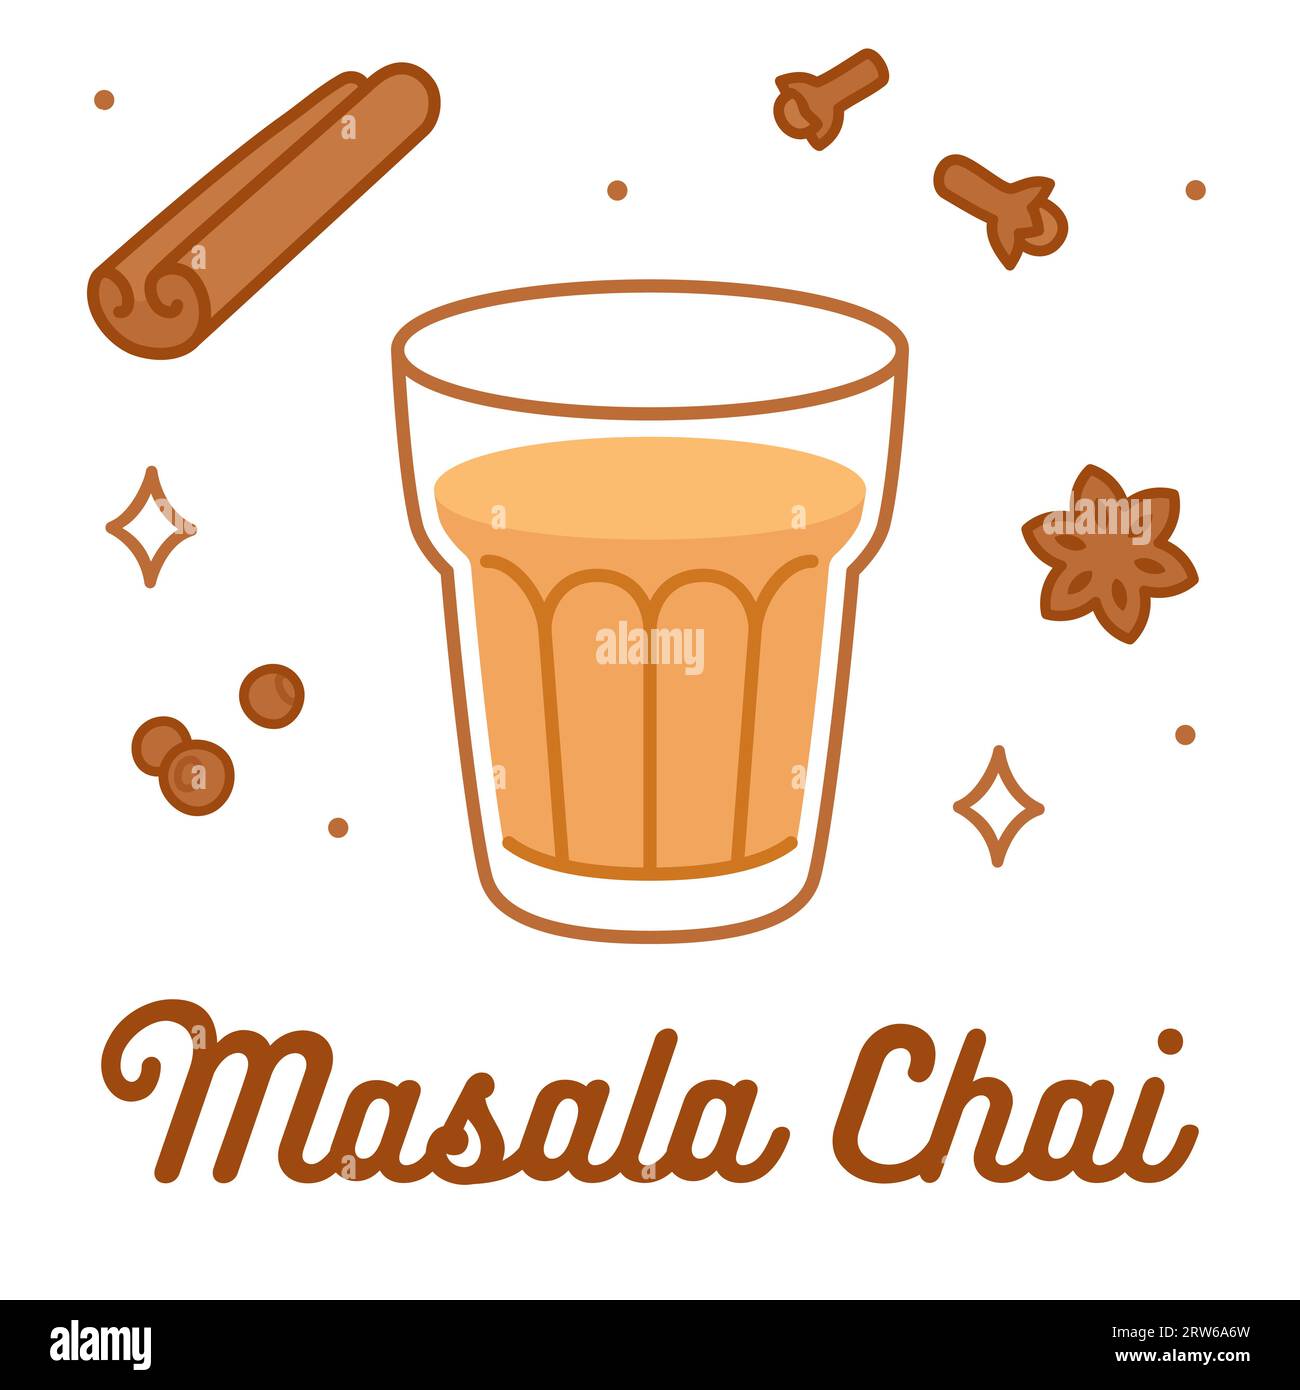 Disegno del tè Masala chai. Vetro cartoon di tè indiano disegnato a mano con spezie aromatiche: Cannella, chiodi di garofano, anice e pepe. Illustrazione vettoriale. Illustrazione Vettoriale